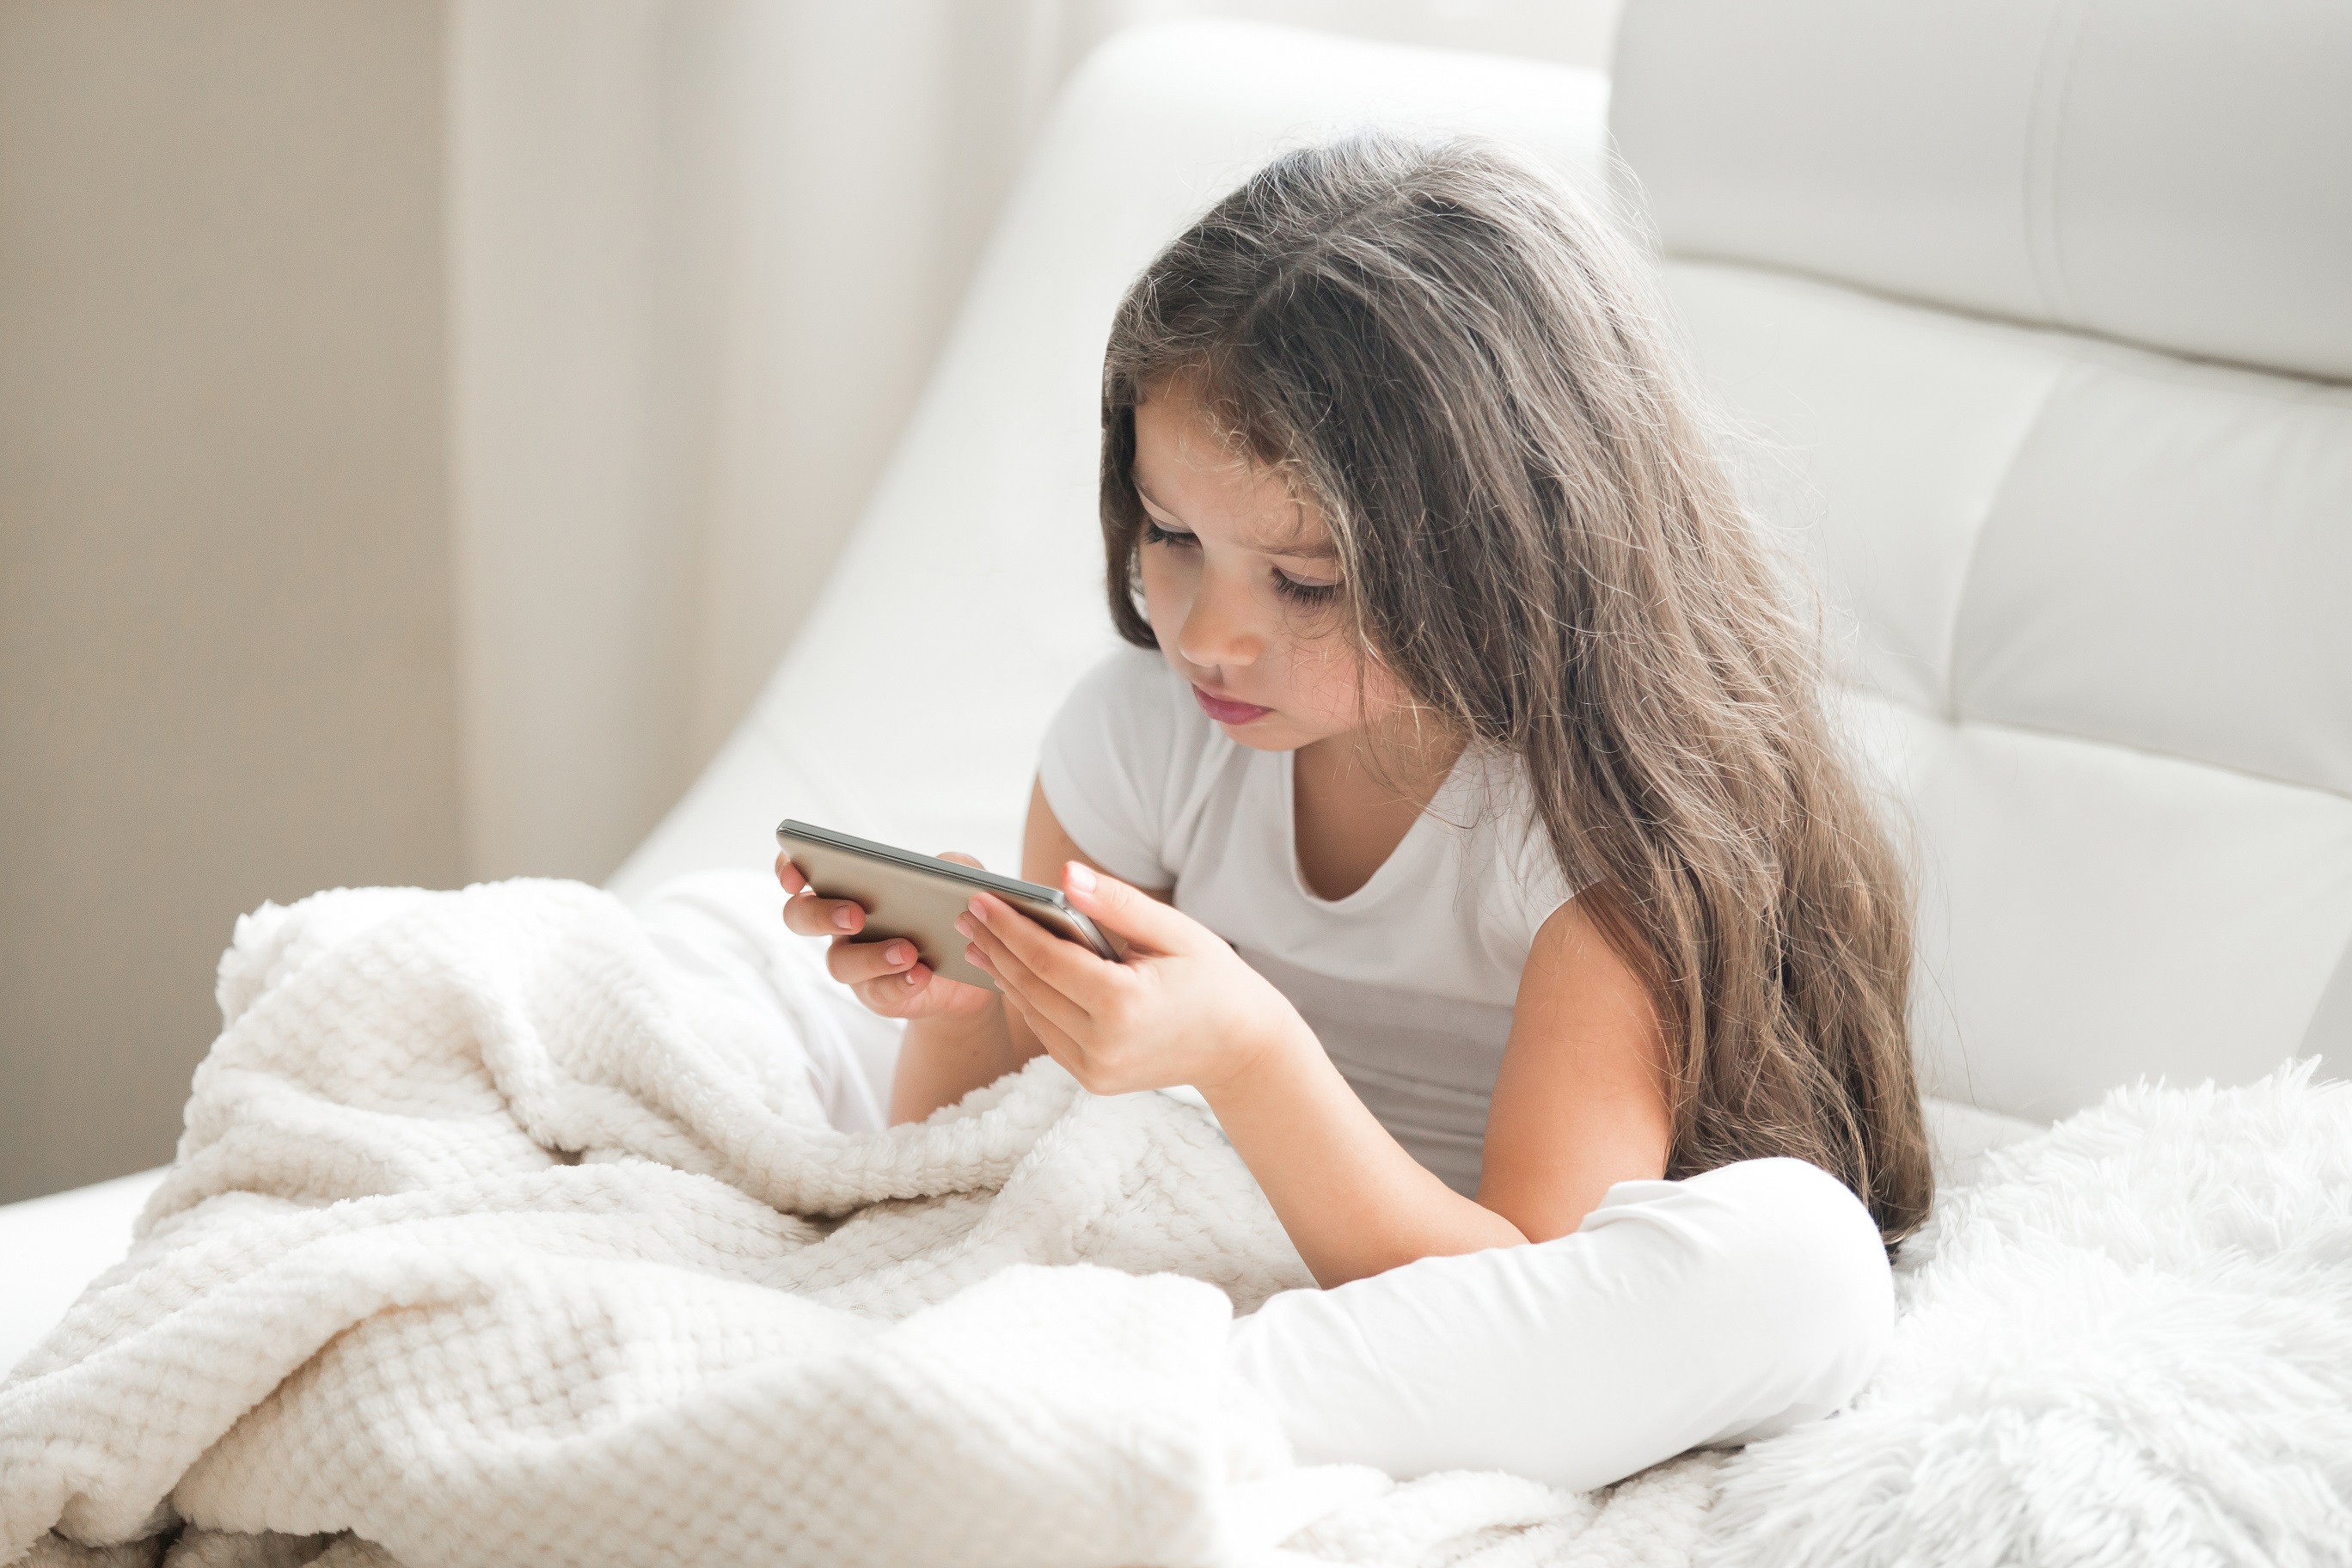 Quando as crianças usam a Internet: 9 cuidados a ter